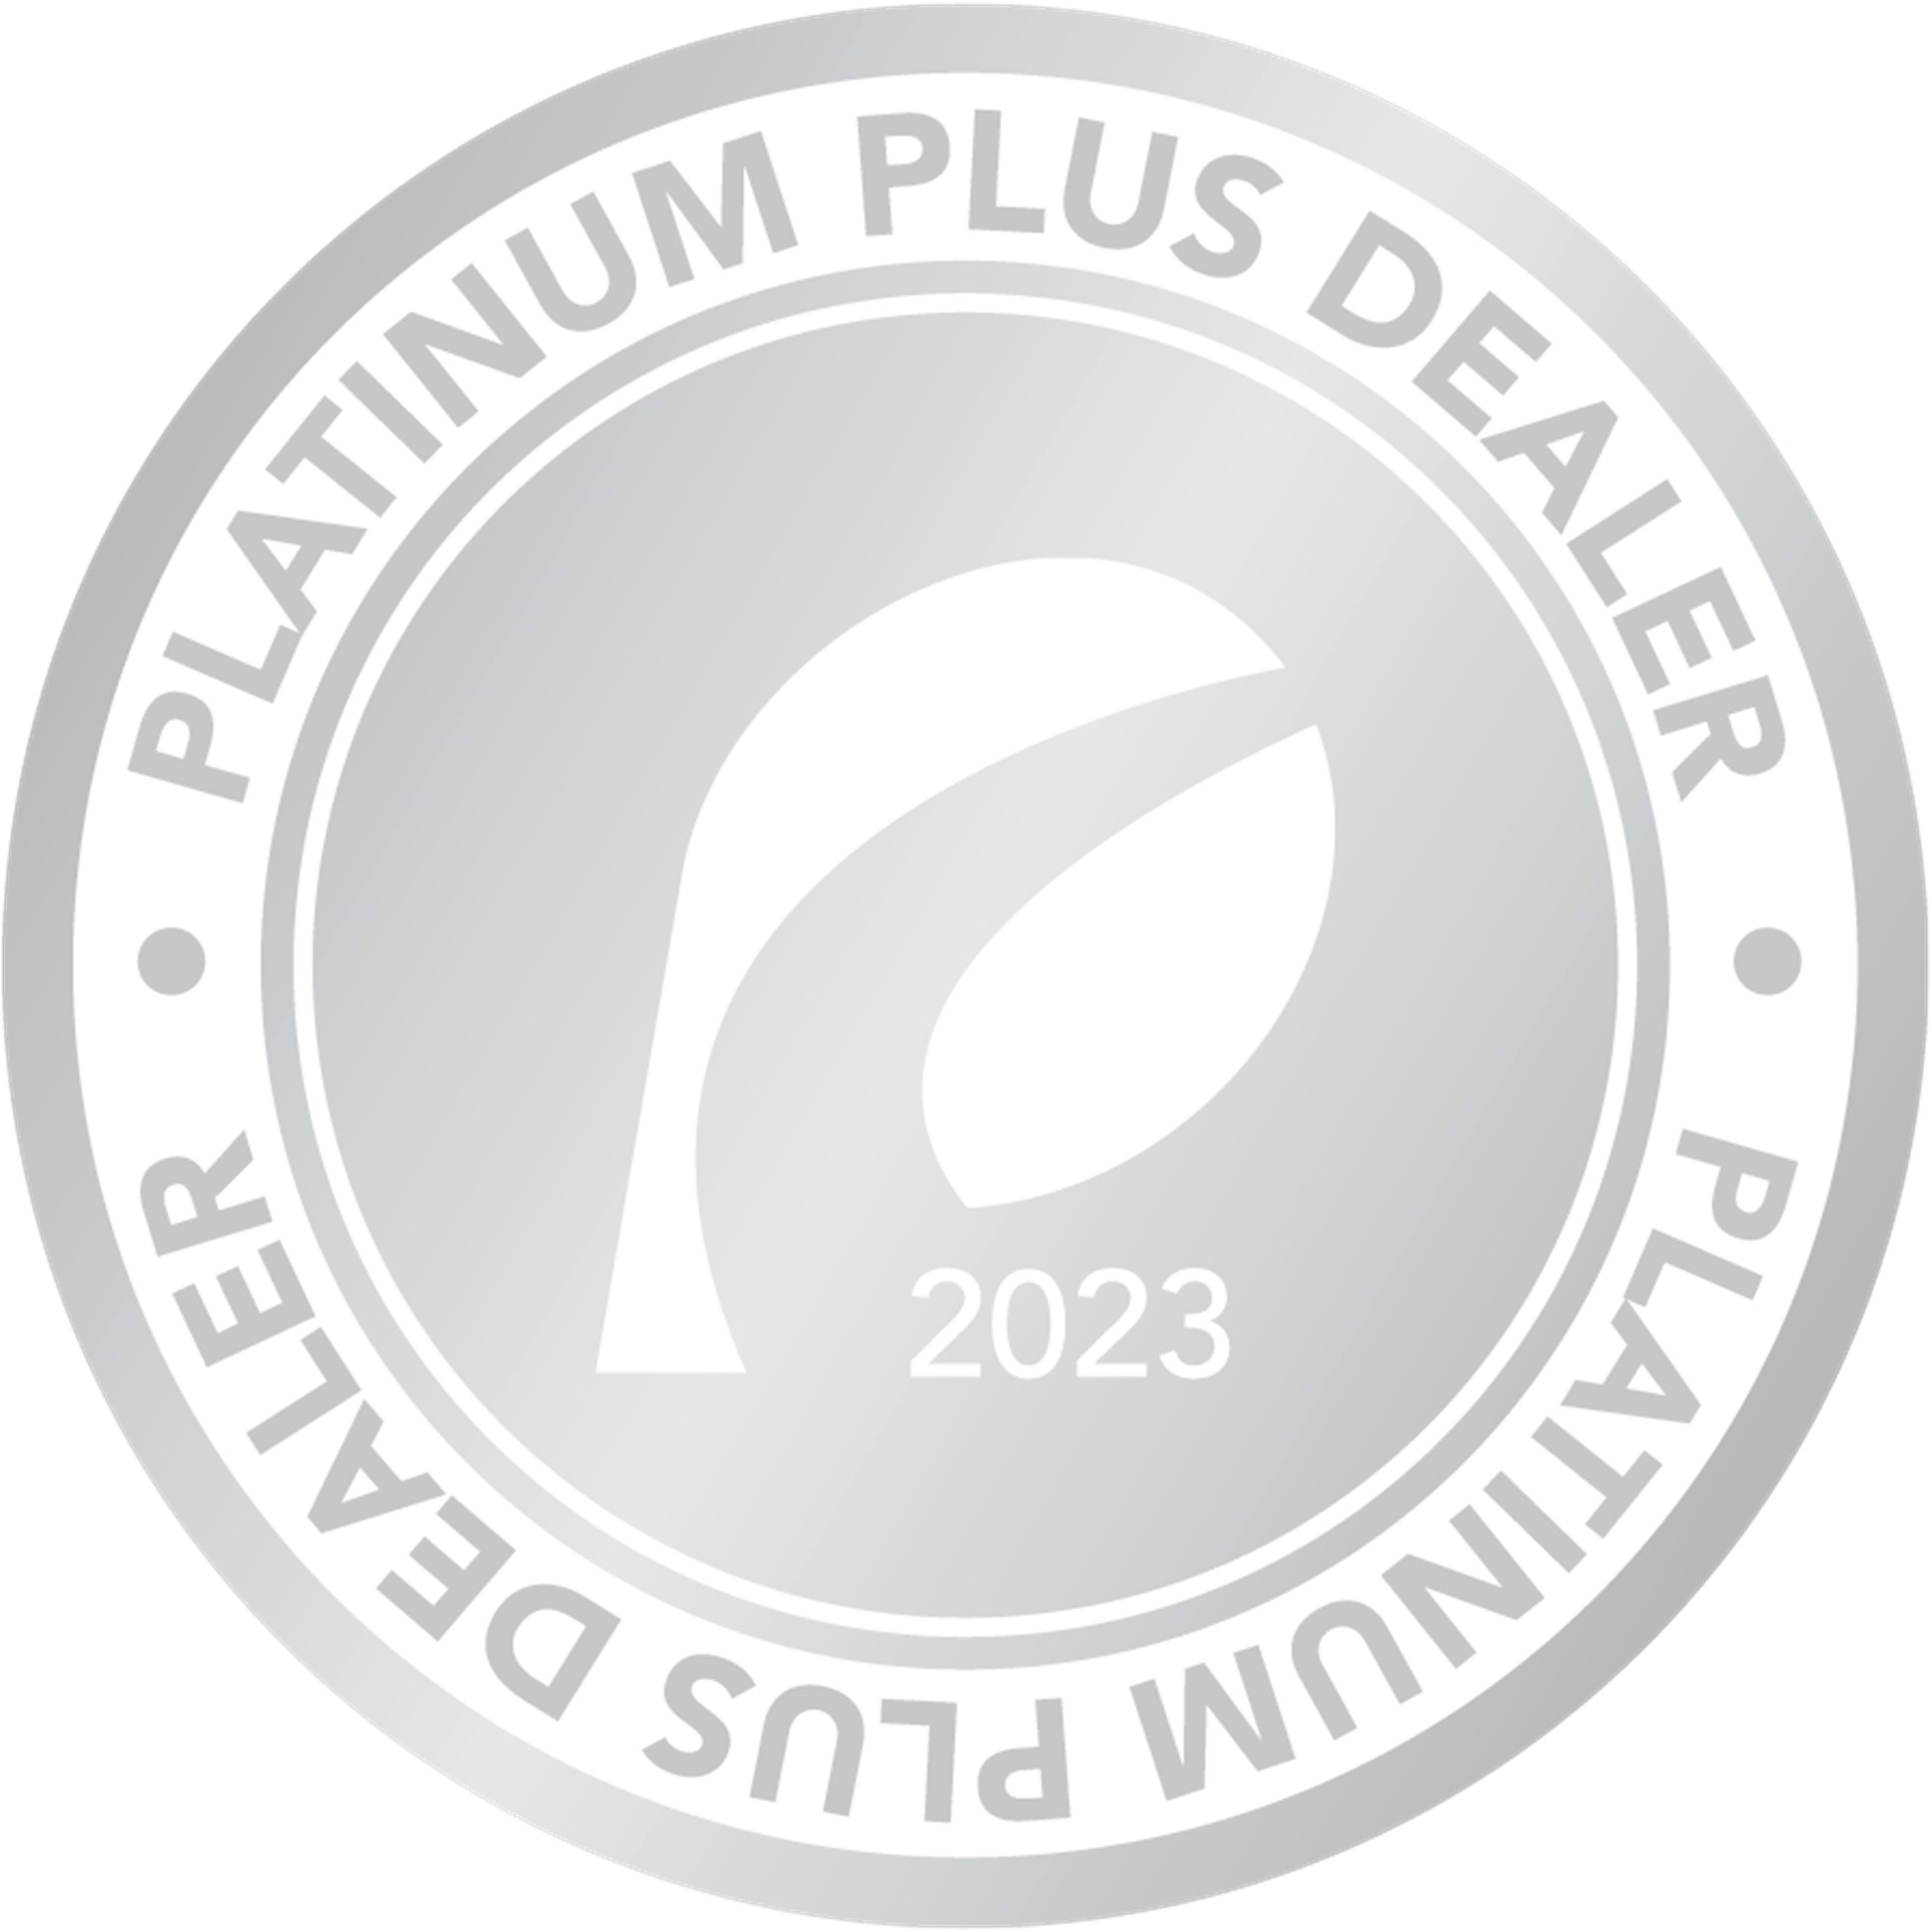 Provia Platinum plus Dealer 2023